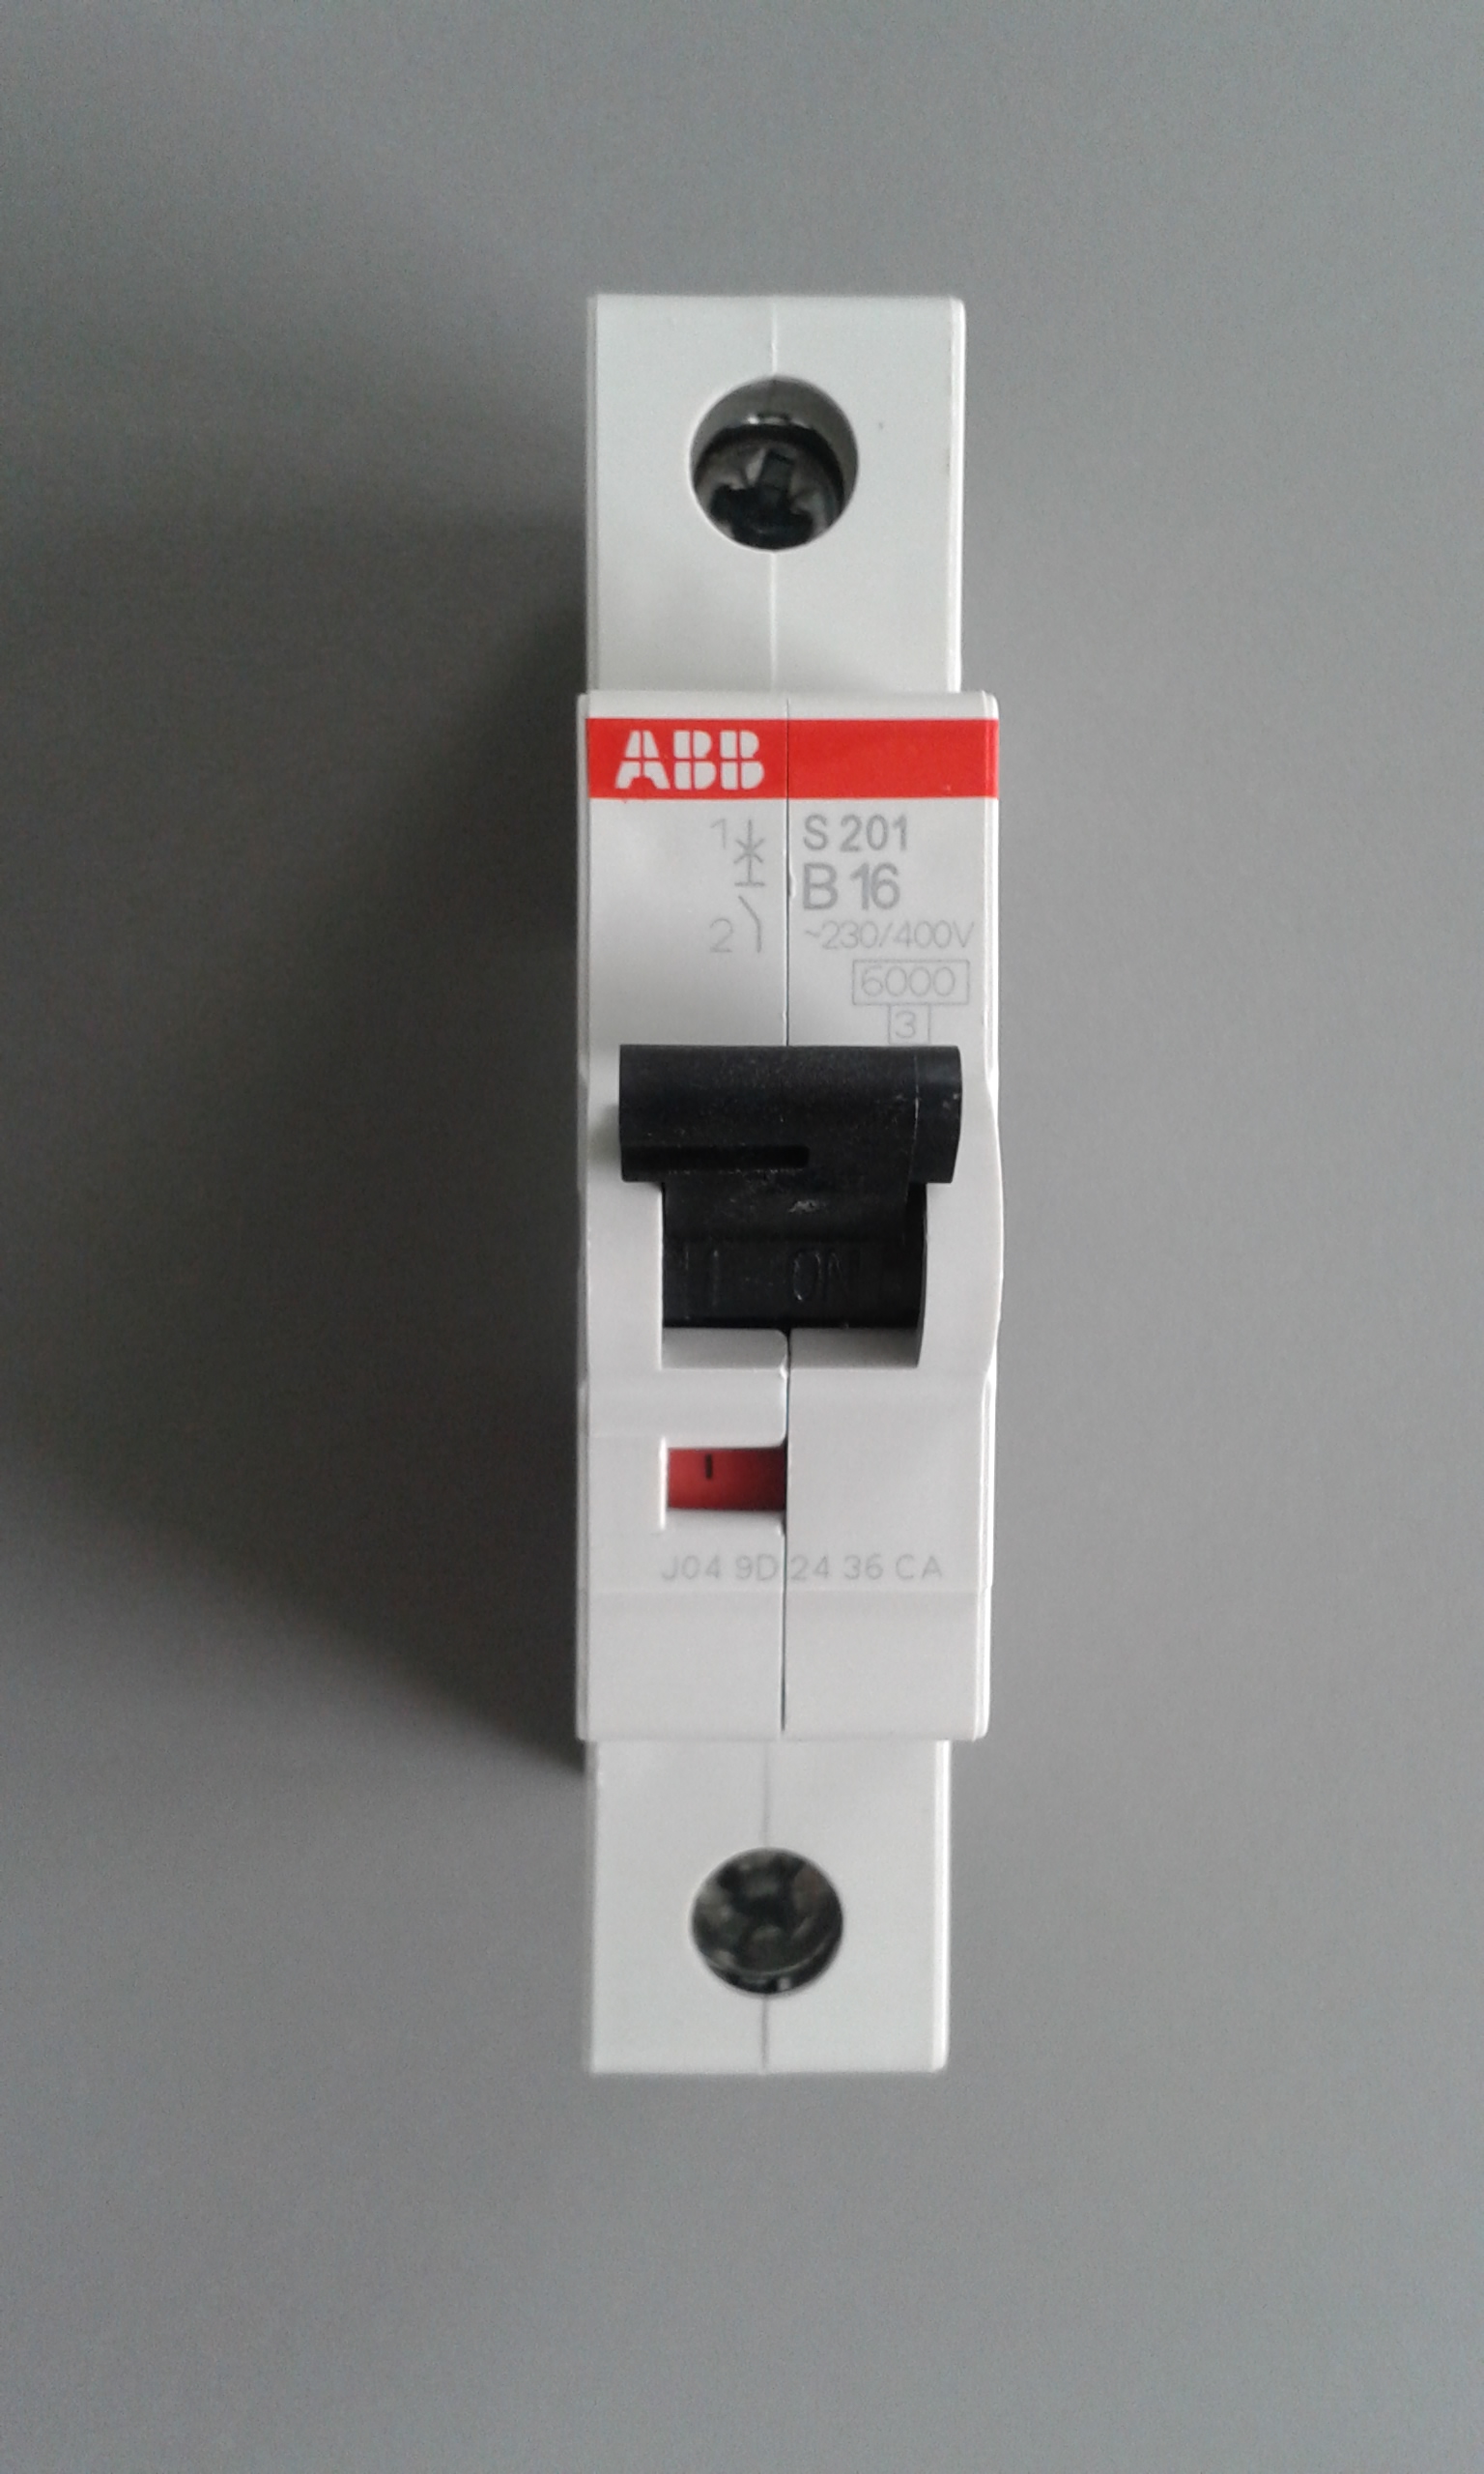 Автоматический выключатель авв s201. ABB s201 c16. Автоматический выключатель ABB s201. Автоматический выключатель ABB c16. Автомат ABB 16a однополюсный.